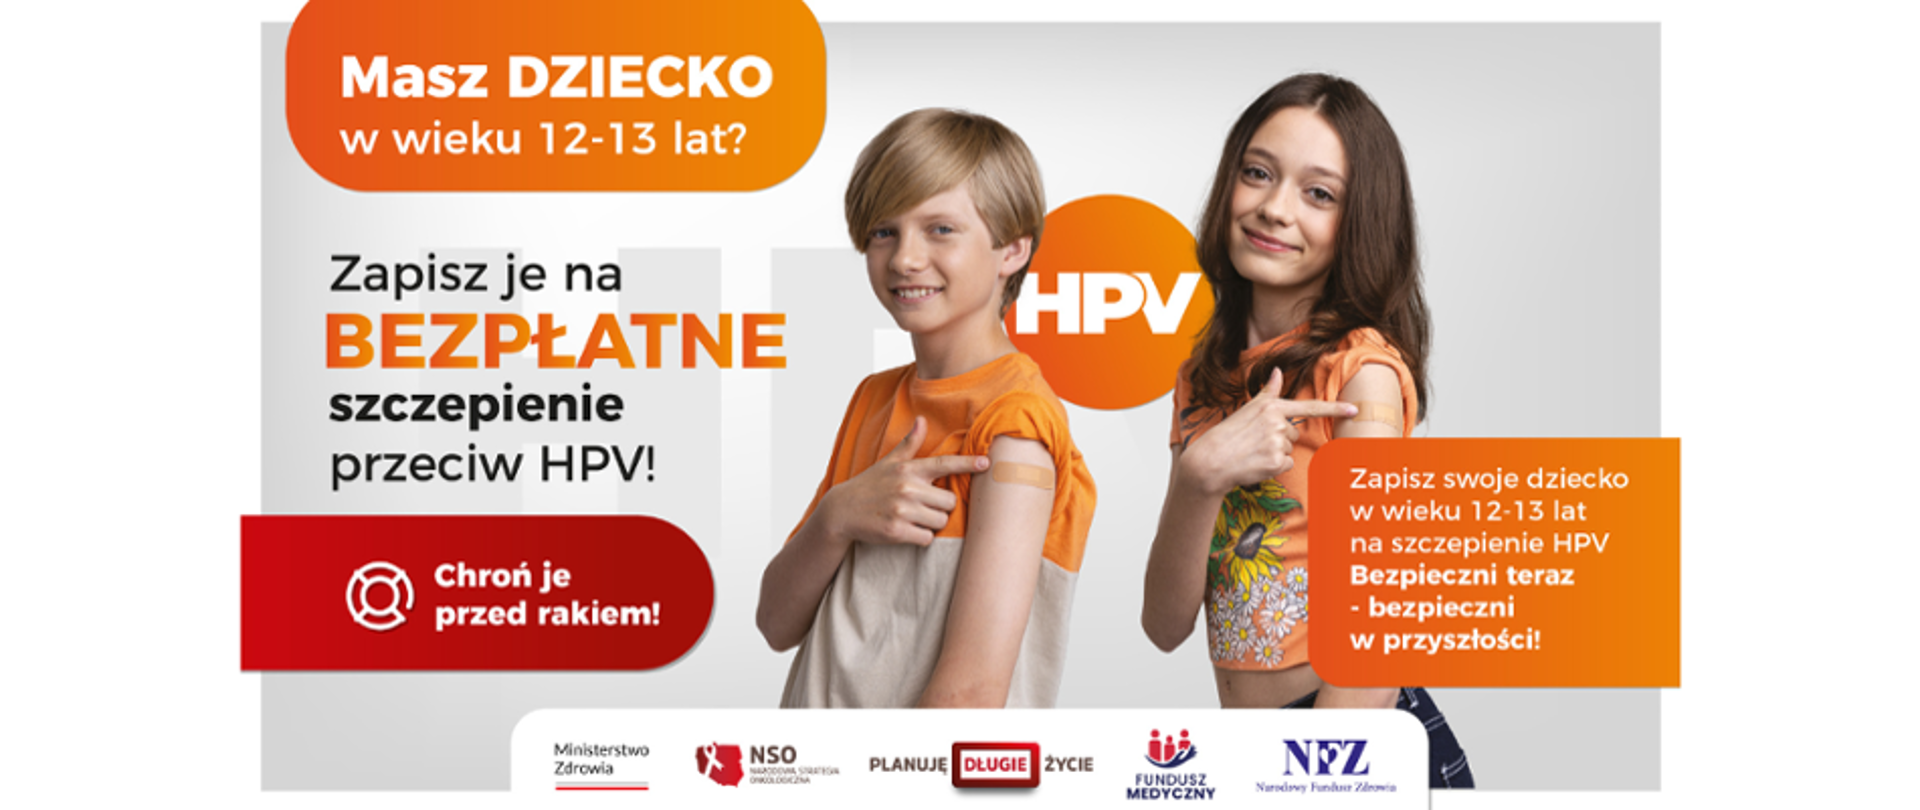 na zdjęciu dwoje nastolatków chłopak i dziewczyna pokazują na ramionach plastry po szczepieniu obok napis - masz dziecko w wieku 12-13 lat zapisz je na bezpłatne szczepienie przeciw HPV